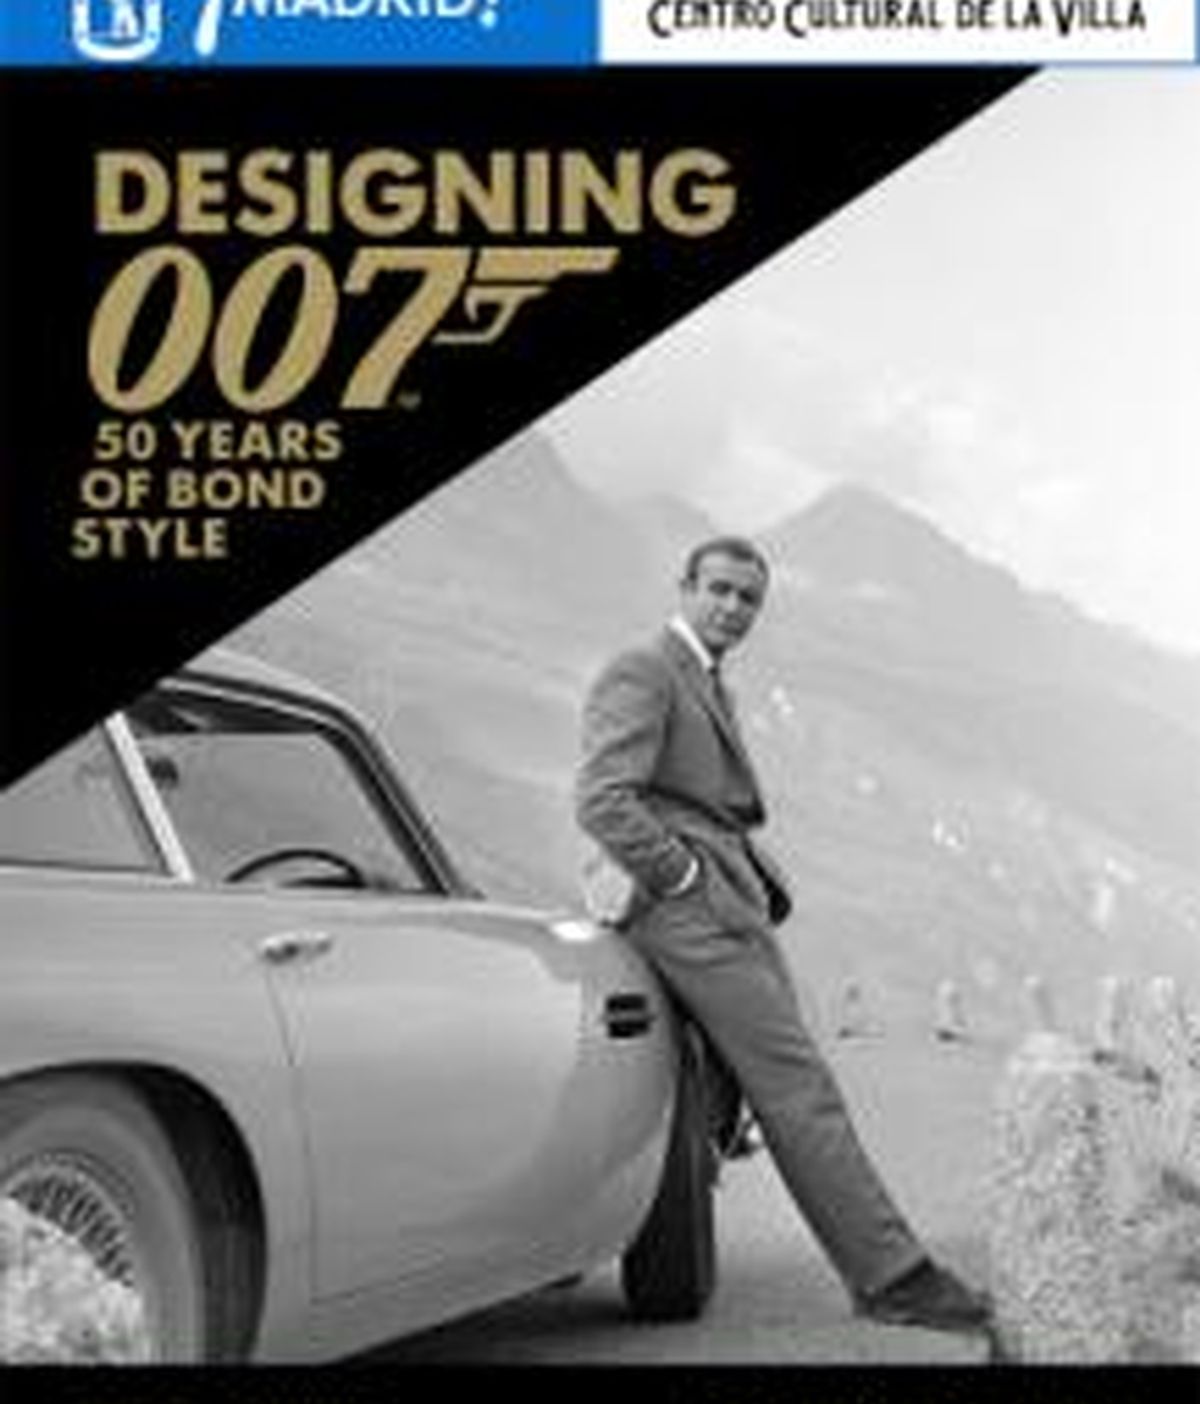 Diseñando 007, los 50 años de James Bond recreados en una exposición